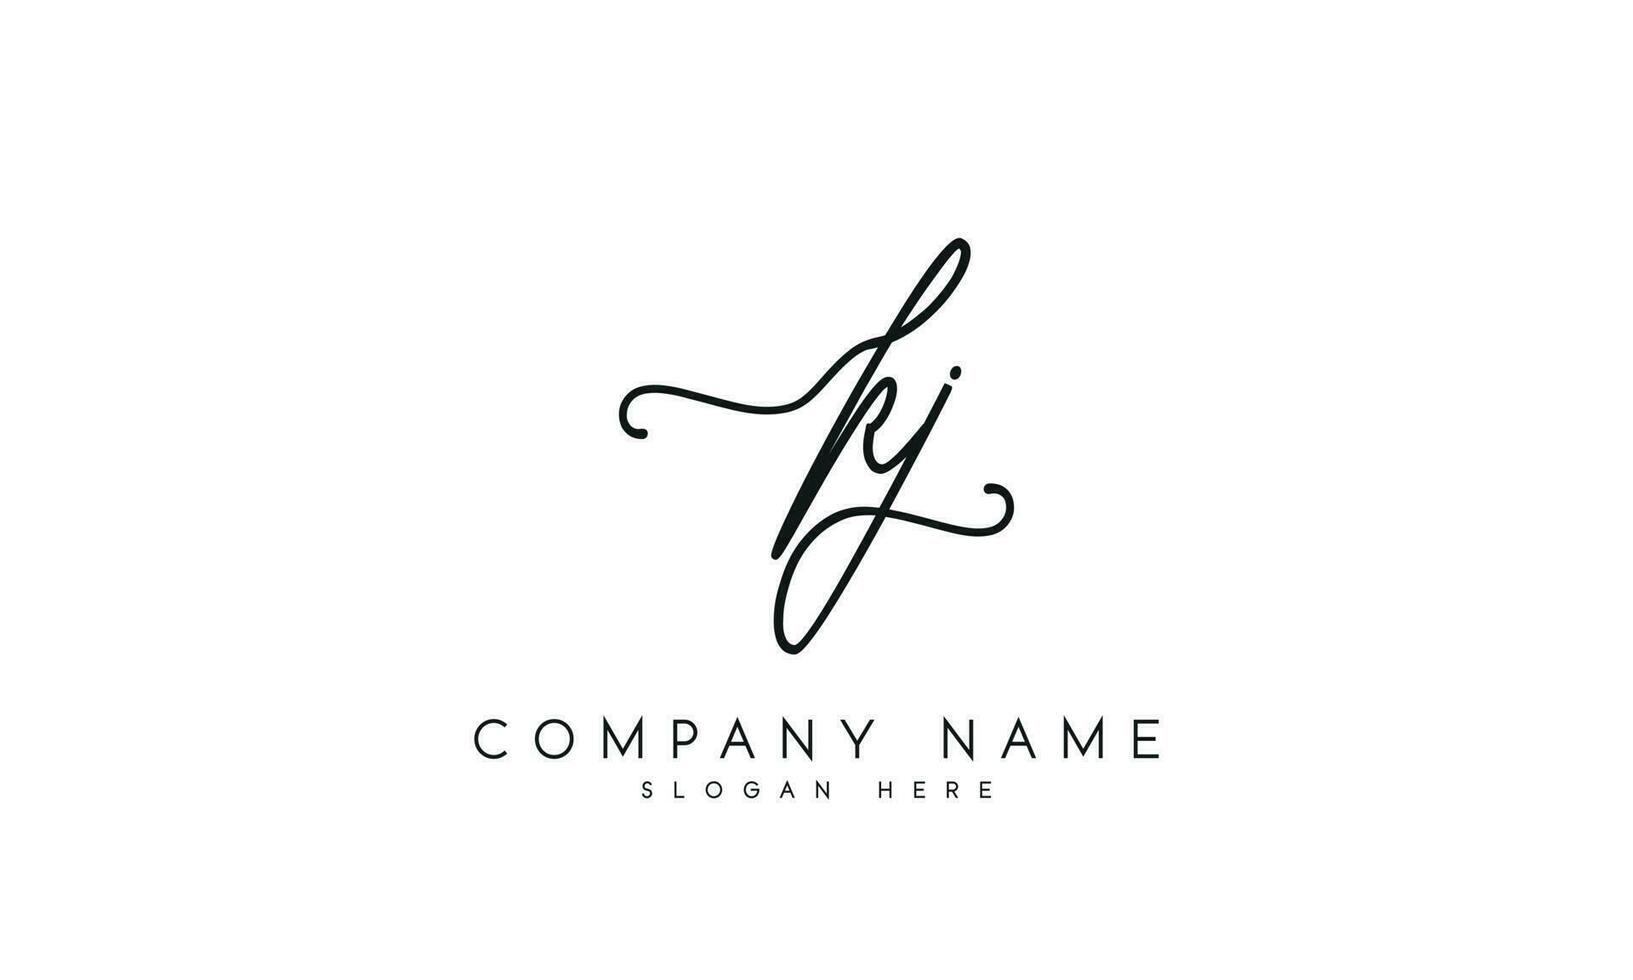 Handwriting KJ logo design. KJ logo design vector illustration on white background. free vector